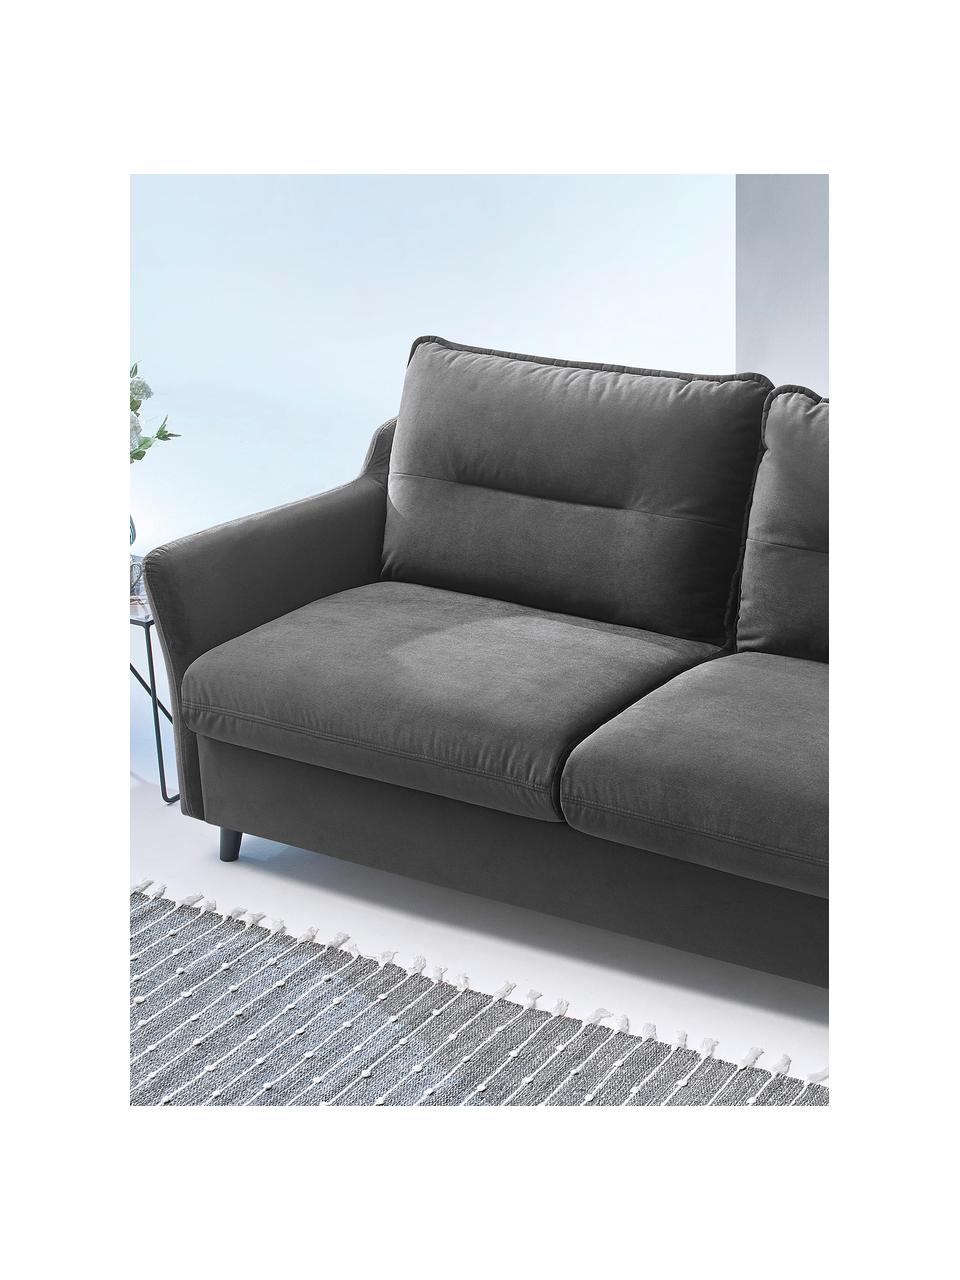 Sofa rozkładana z aksamitu Loft (3-osobowa), Tapicerka: 100% aksamit poliestrowy, Nogi: metal lakierowany, Ciemny szary, S 191 x G 100 cm